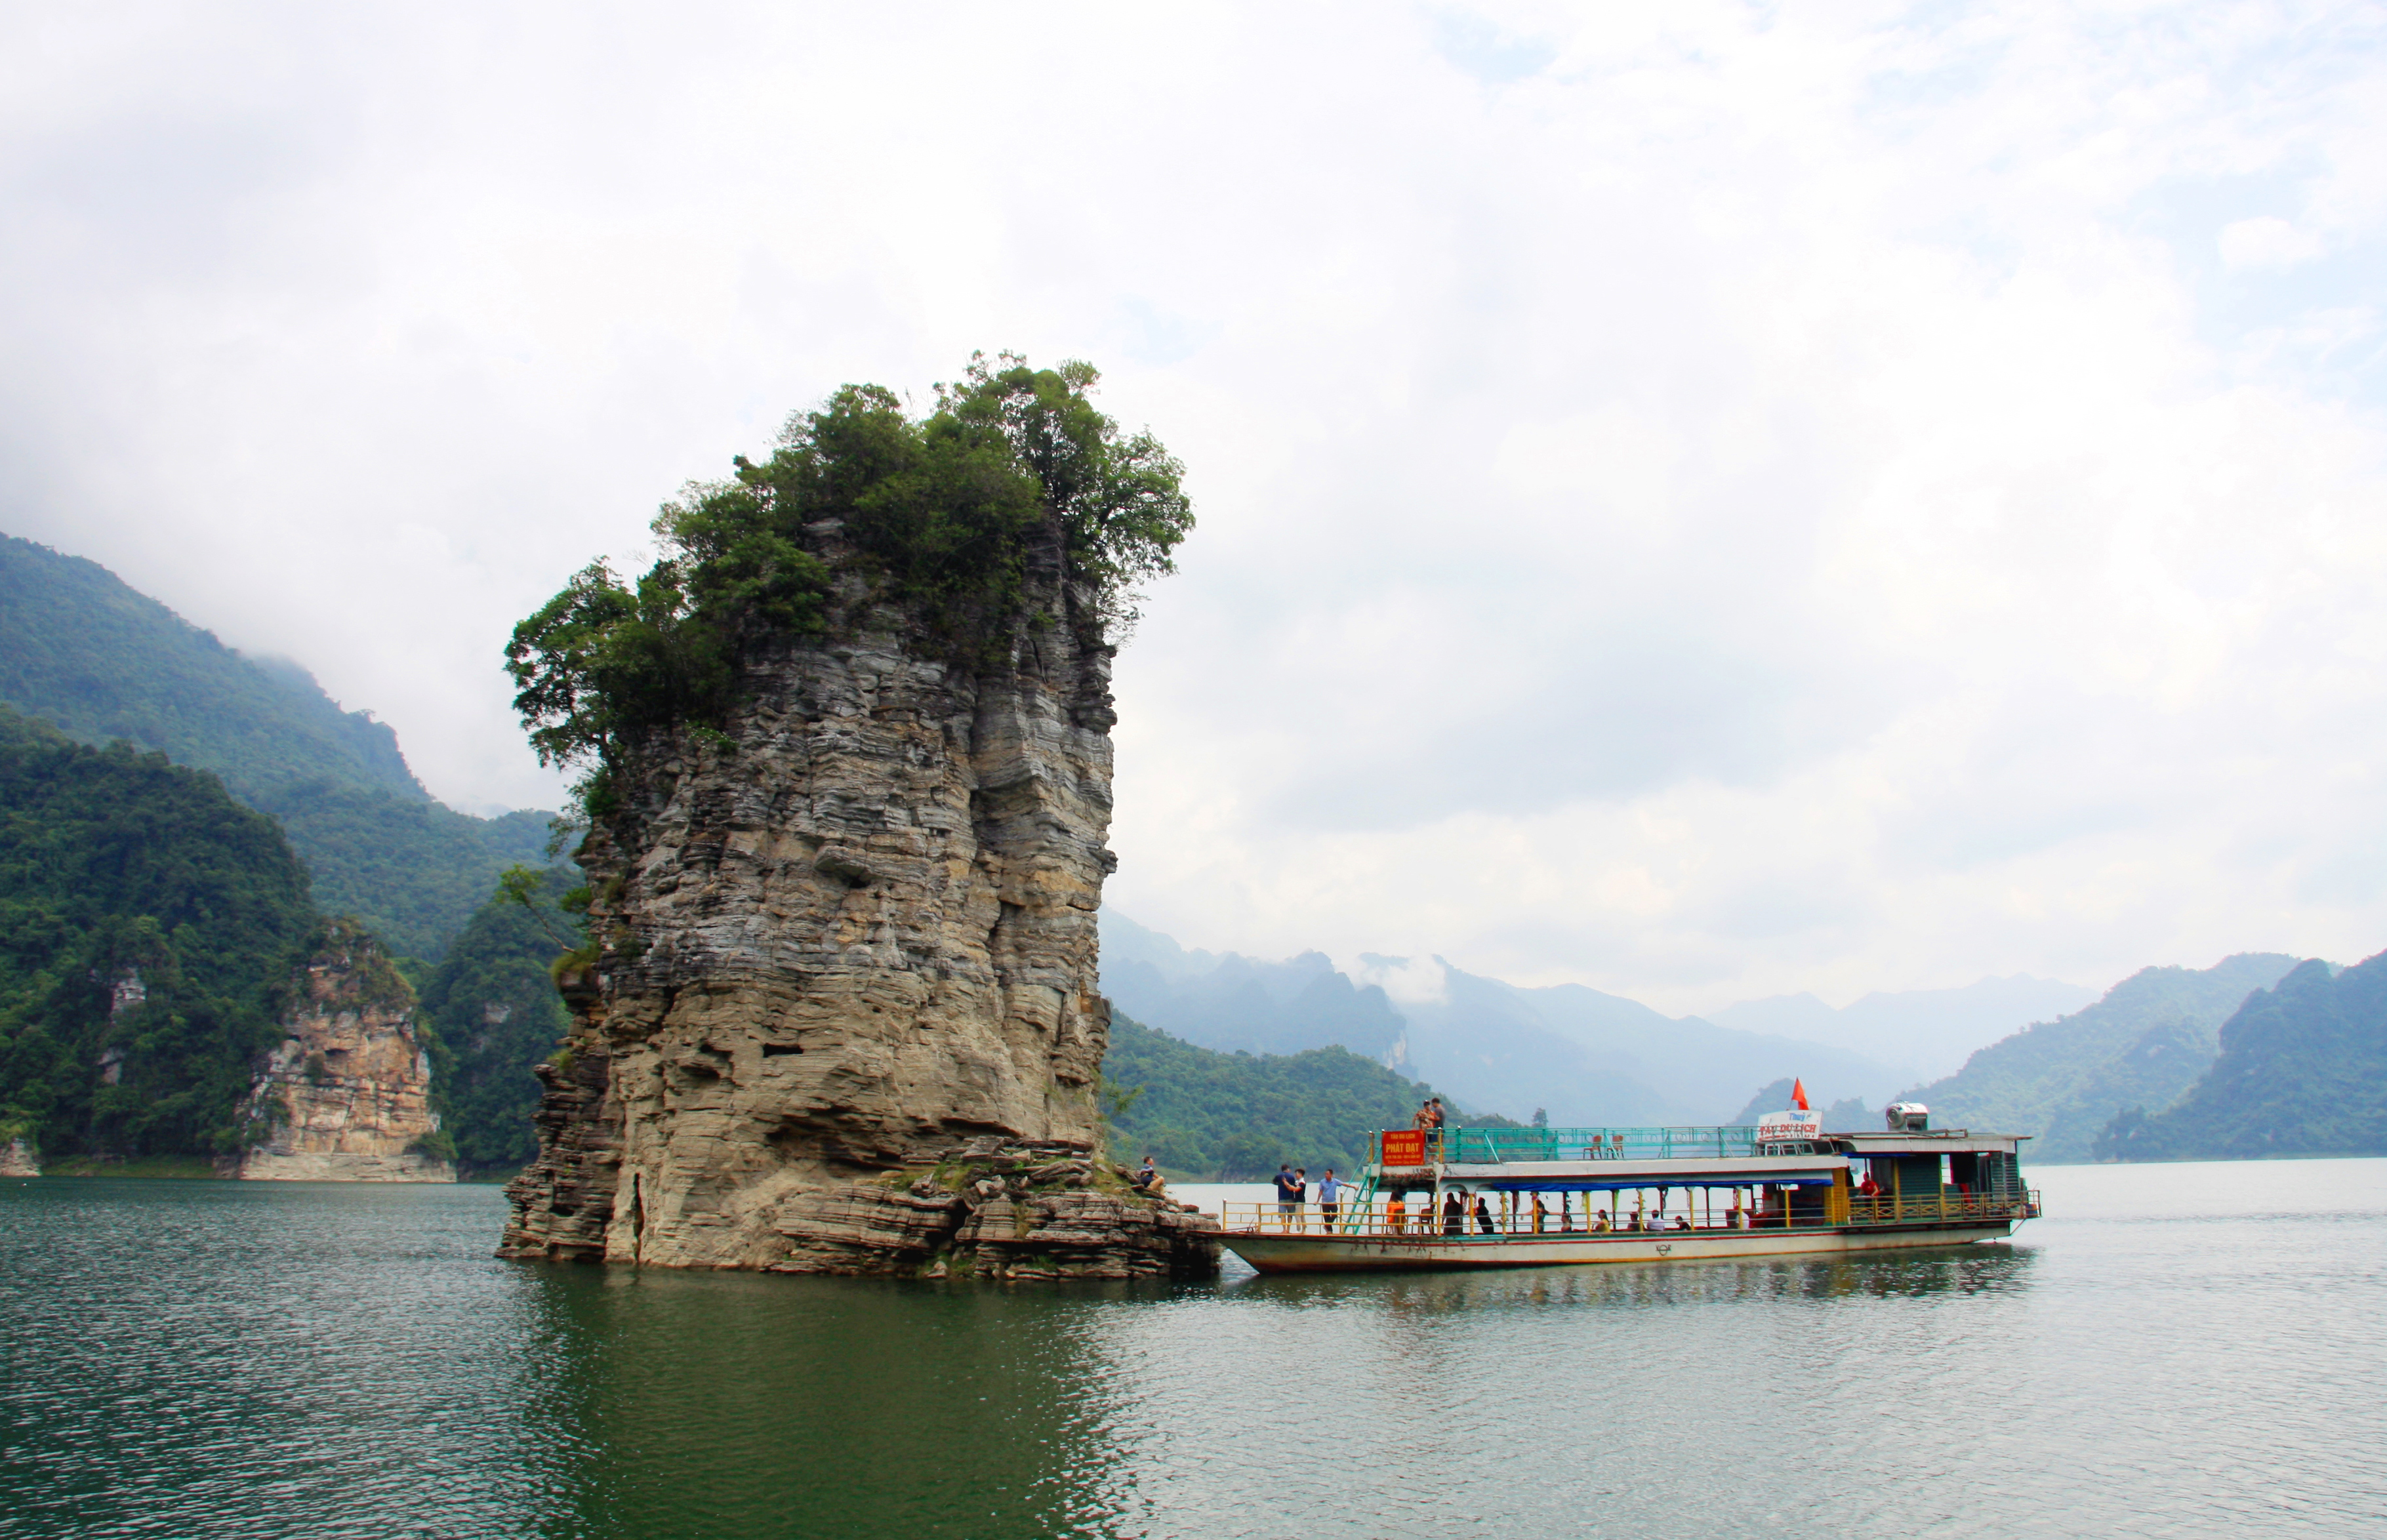 Đi dọc lòng hồ đến địa phận xã Thượng Lâm (huyện Lâm Bình) giữa trời nước mênh mông, du khách sẽ ngạc nhiên trước vẻ đẹp độc đáo của ngọn cọc Vài Phạ (tiếng Tày nghĩa là cọc buộc trâu trời).